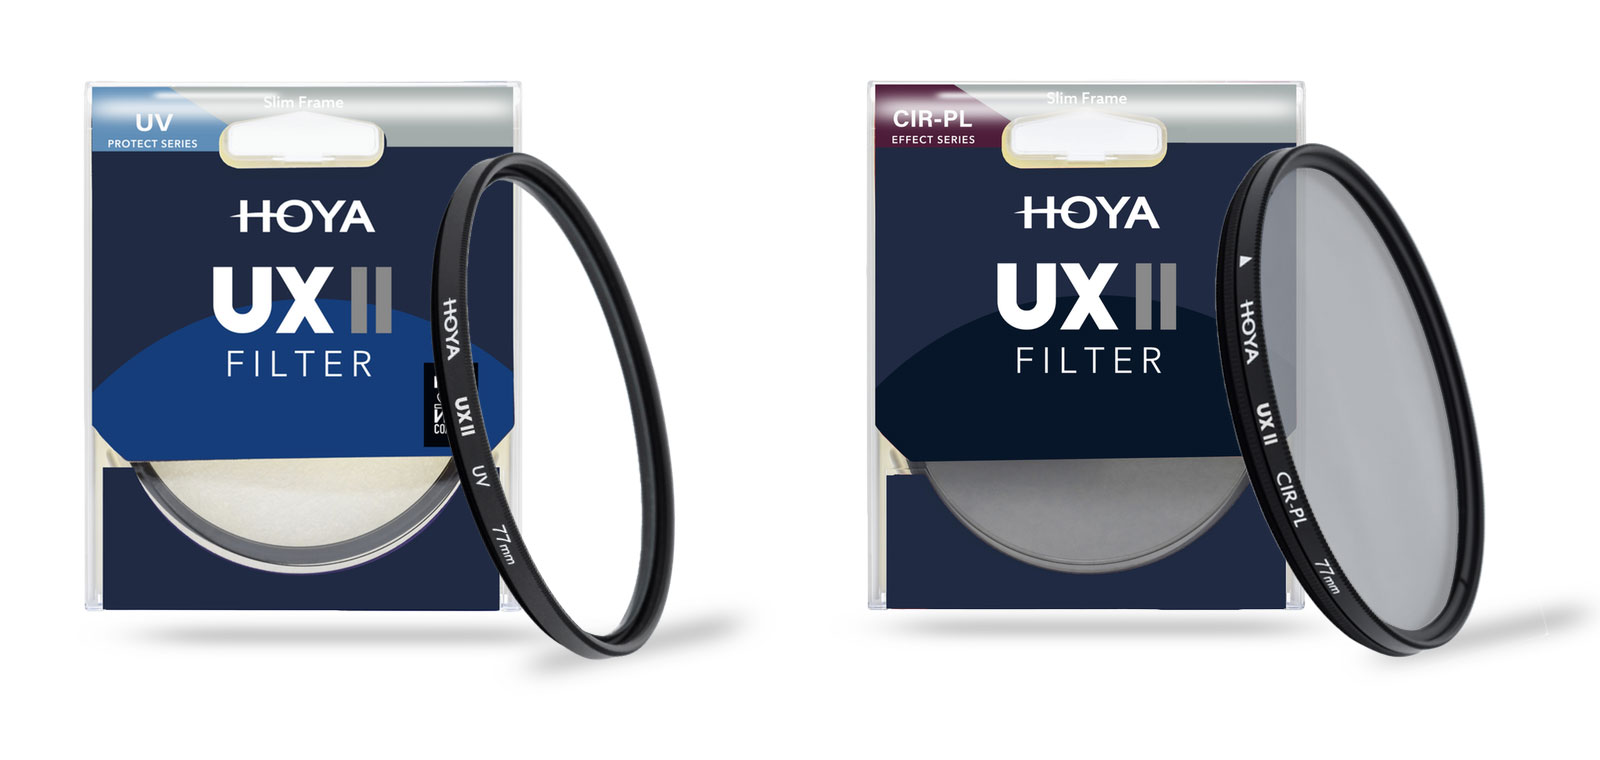 HOYA | HOYA UX II filter series release